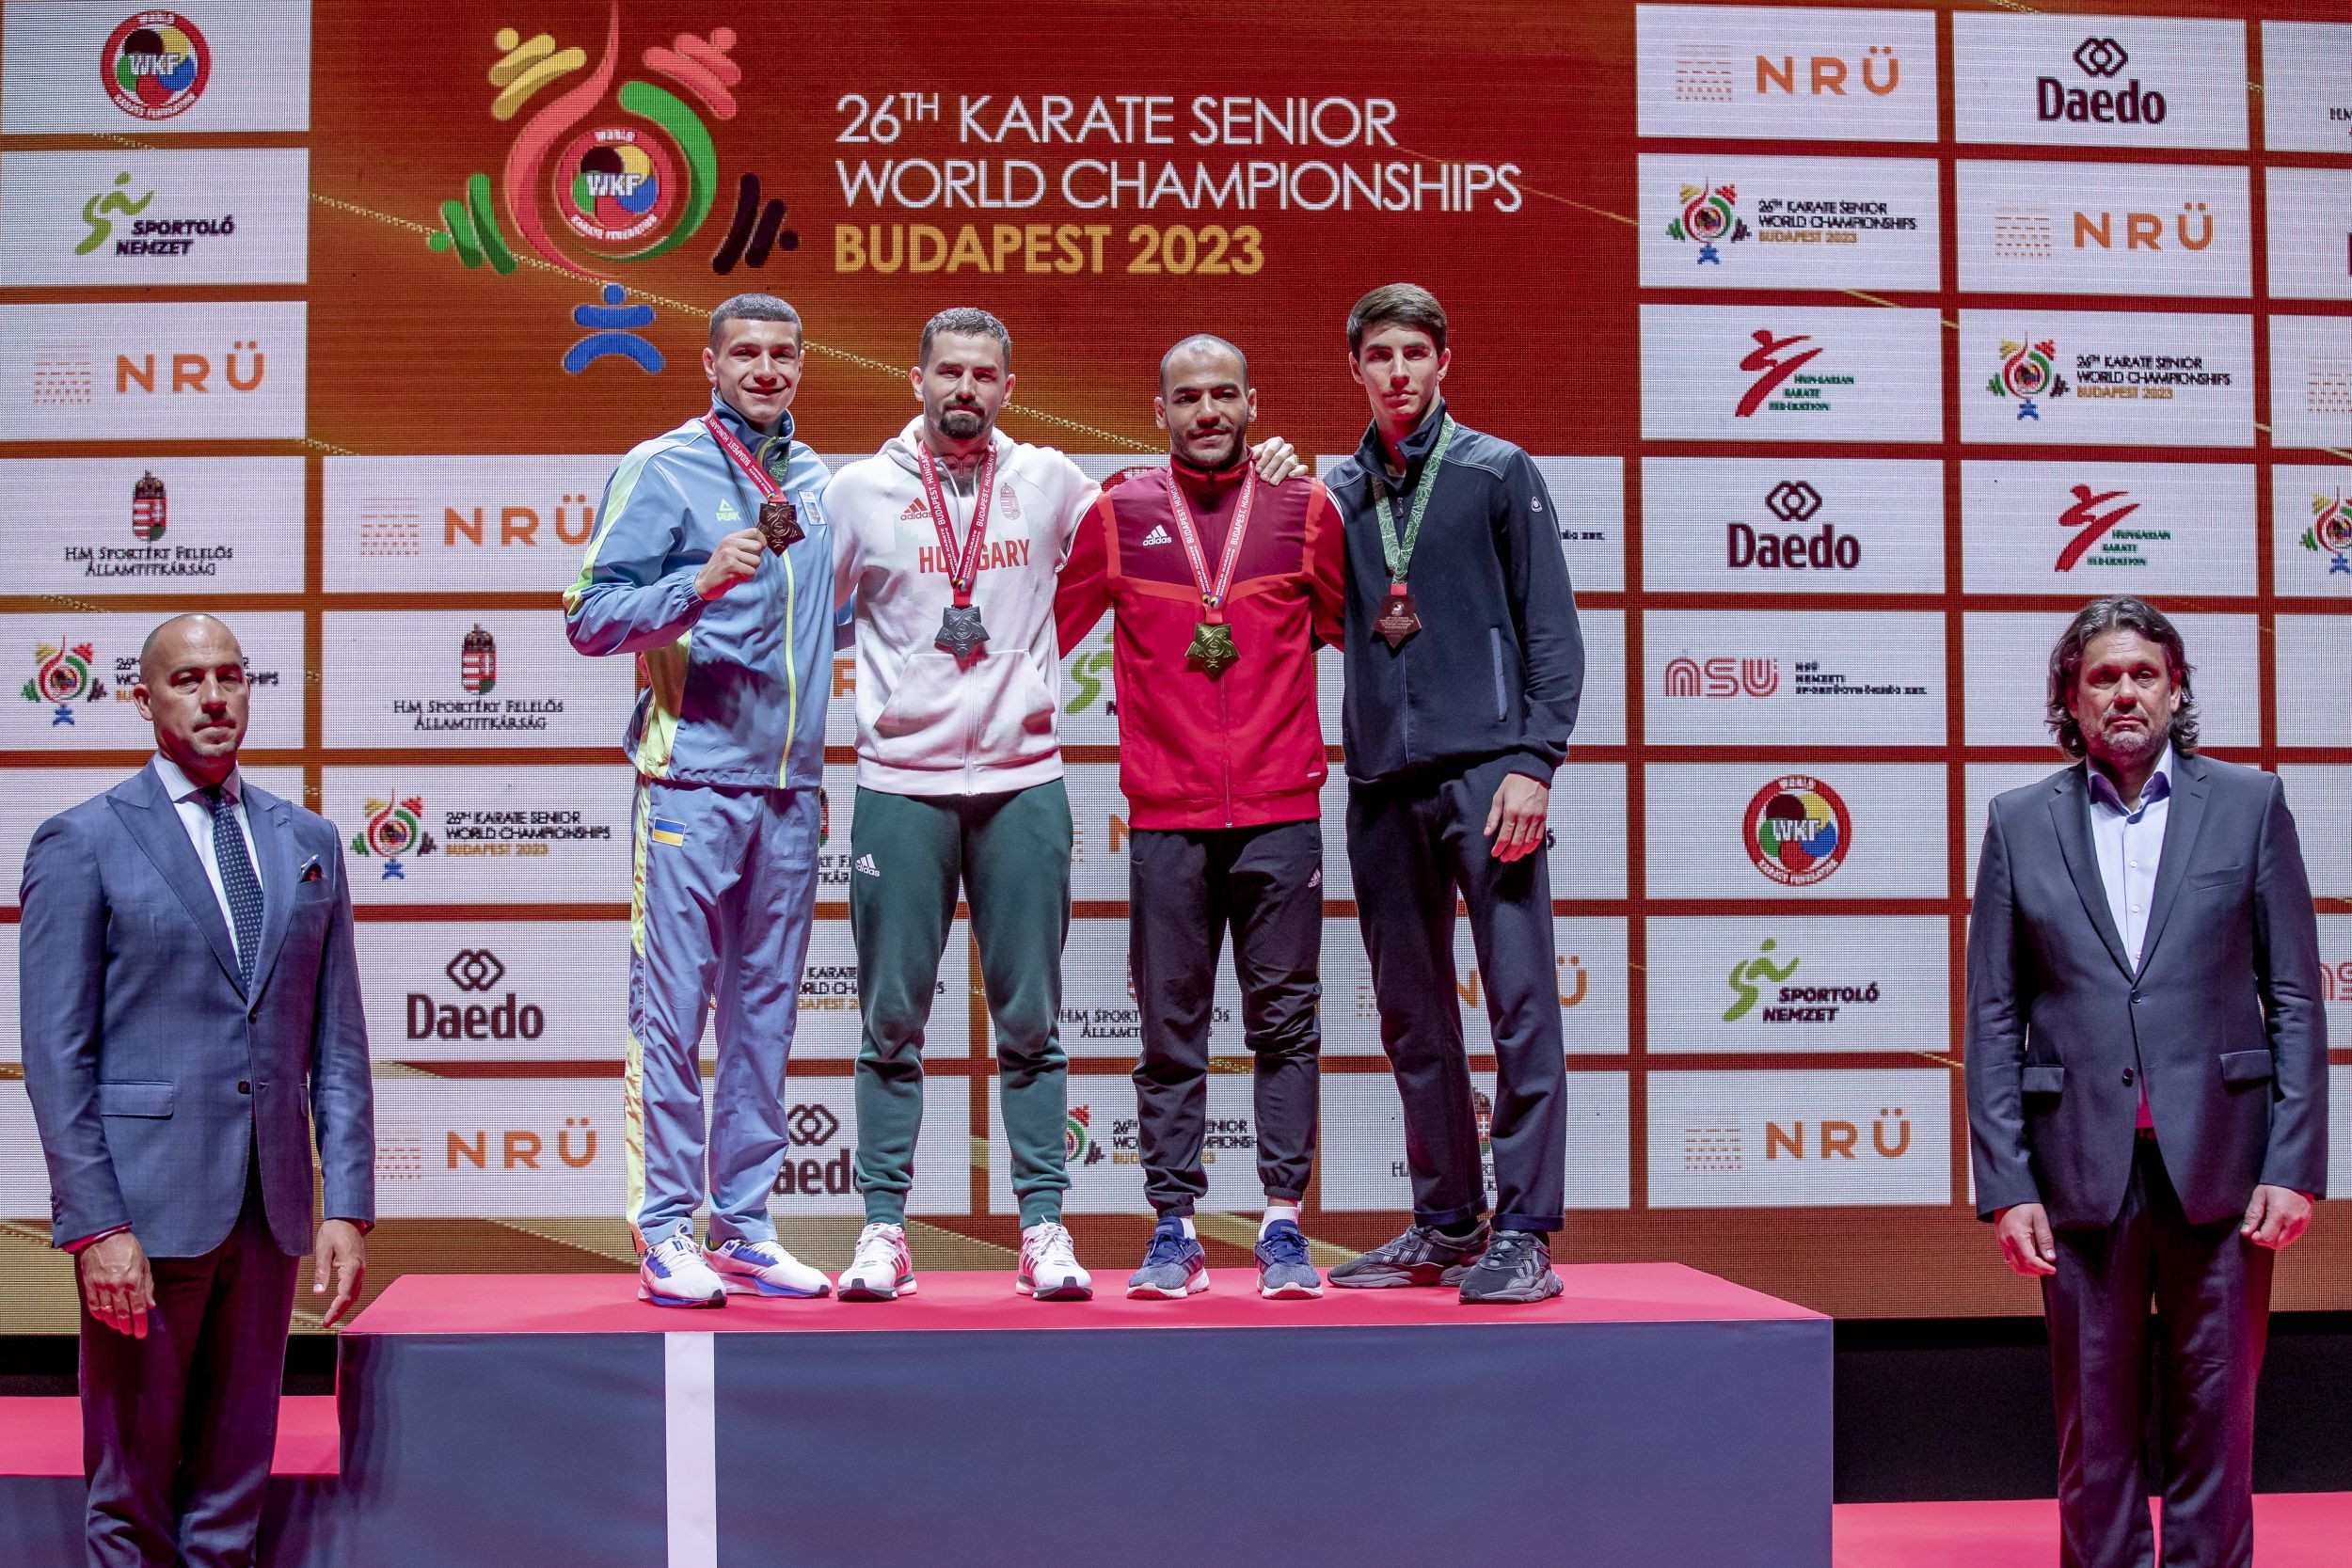 Karate-vb - Hárspataki ezüstérmes, Kákosy világbajnok